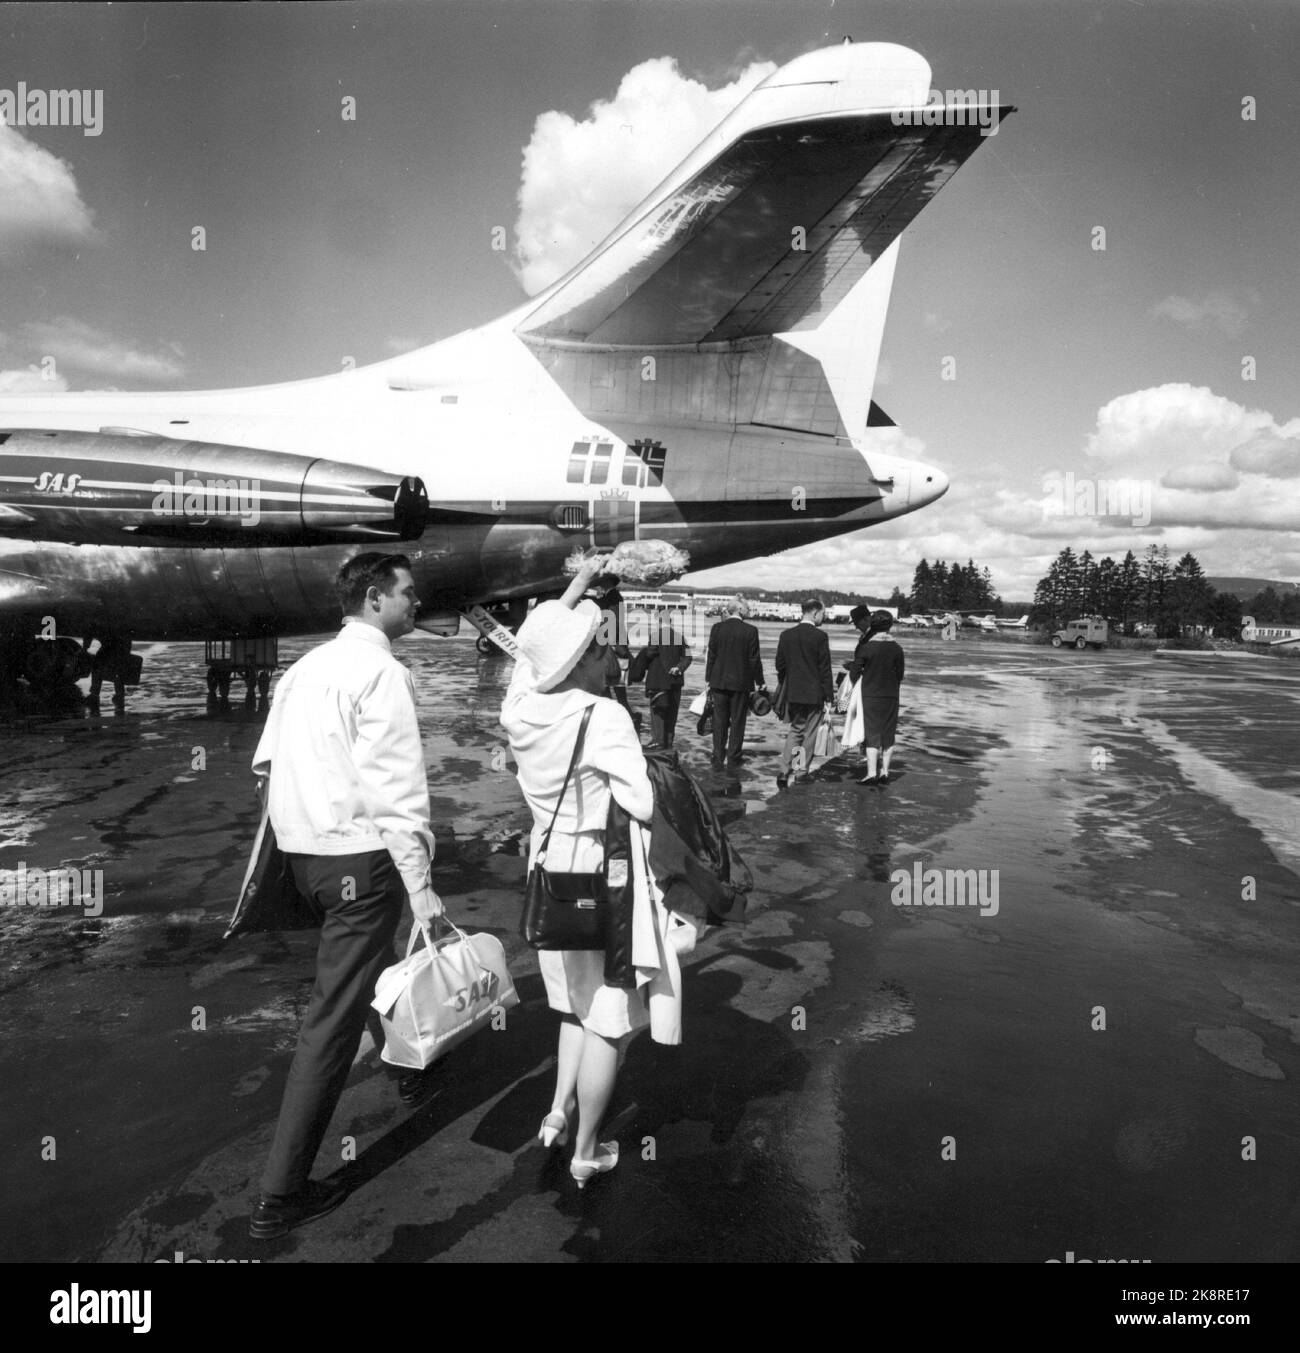 1965 - im Jahr 60s reisten immer mehr Norweger auf einer Charterreise ins Ausland. Passagiere auf dem Weg an Bord der SAS-Flugzeuge. Foto: Aage Storløkken / Aktuell / NTB Stockfoto